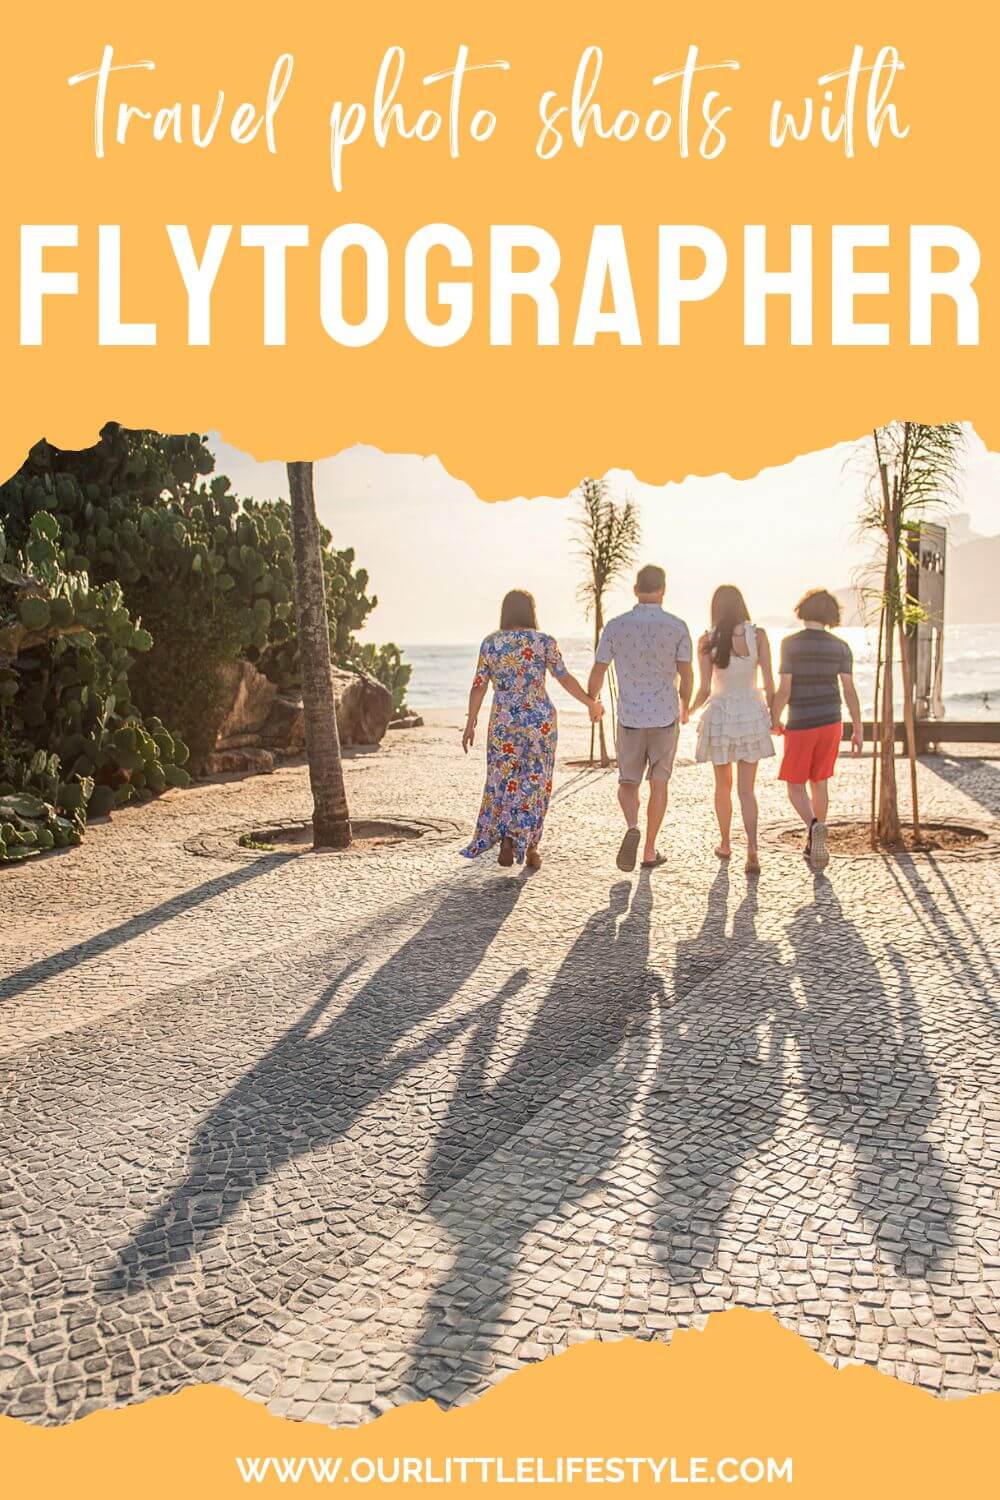 Flytographer Reviews Brazil